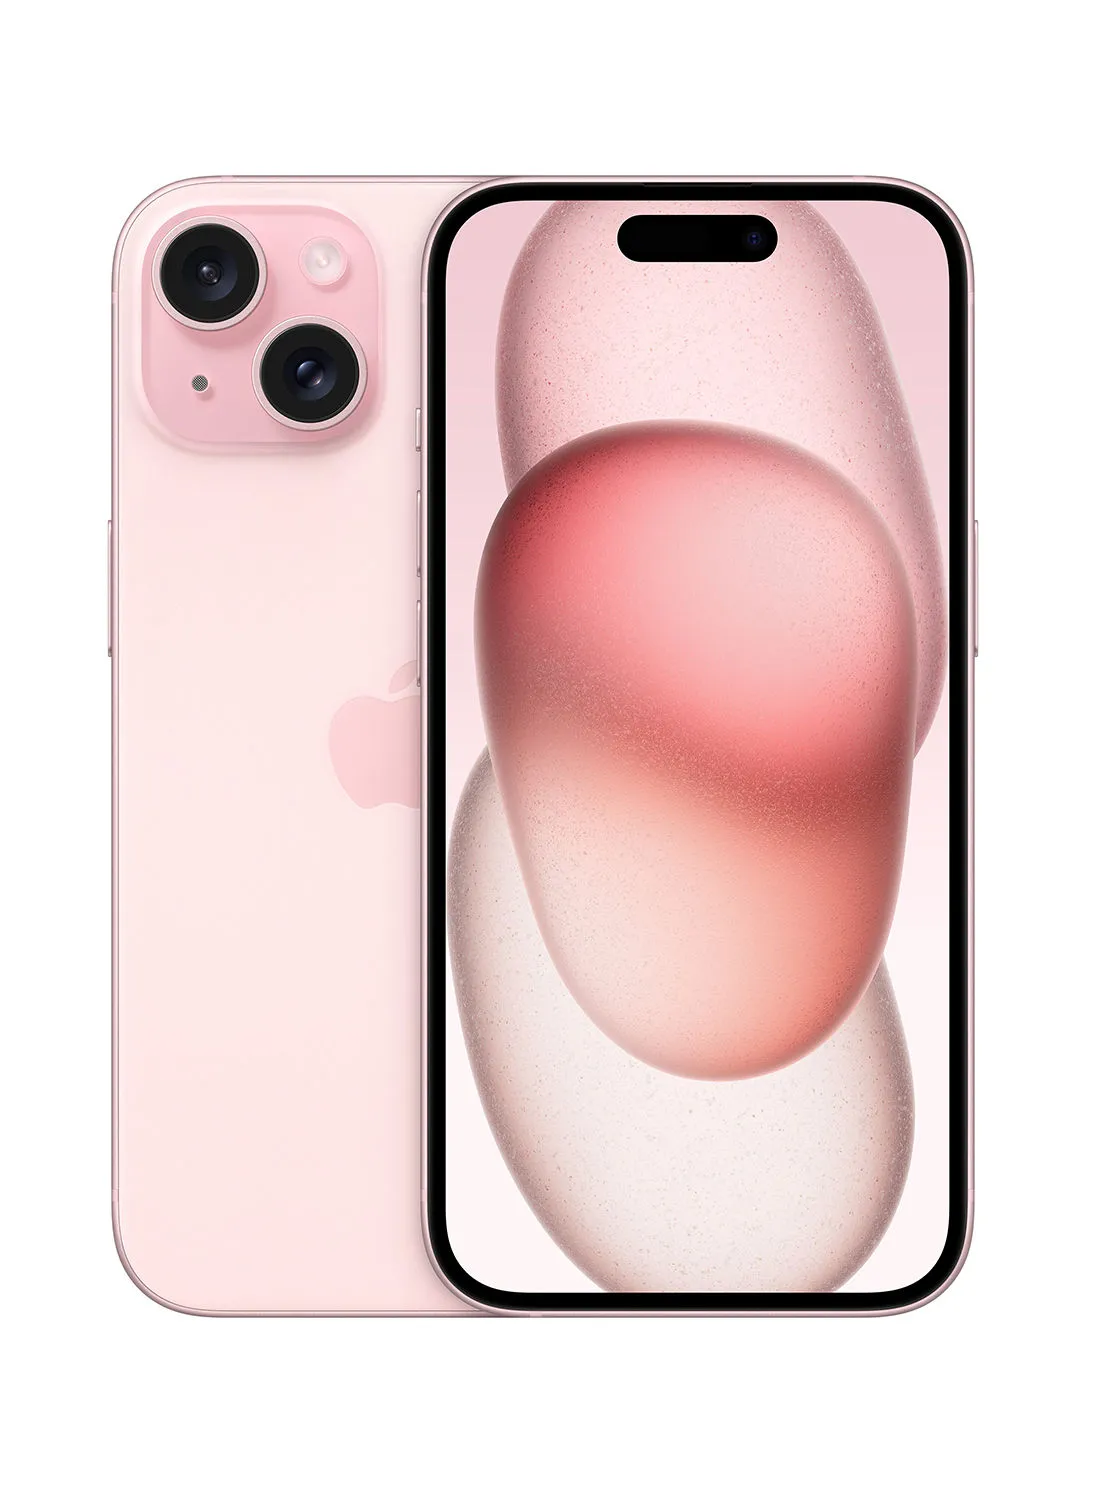 هاتف أبل آيفون 15 بسعة 512 جيجابايت باللون الوردي، يدعم تقنية 5G مع تطبيق فيس تايم - إصدار الشرق الأوسط